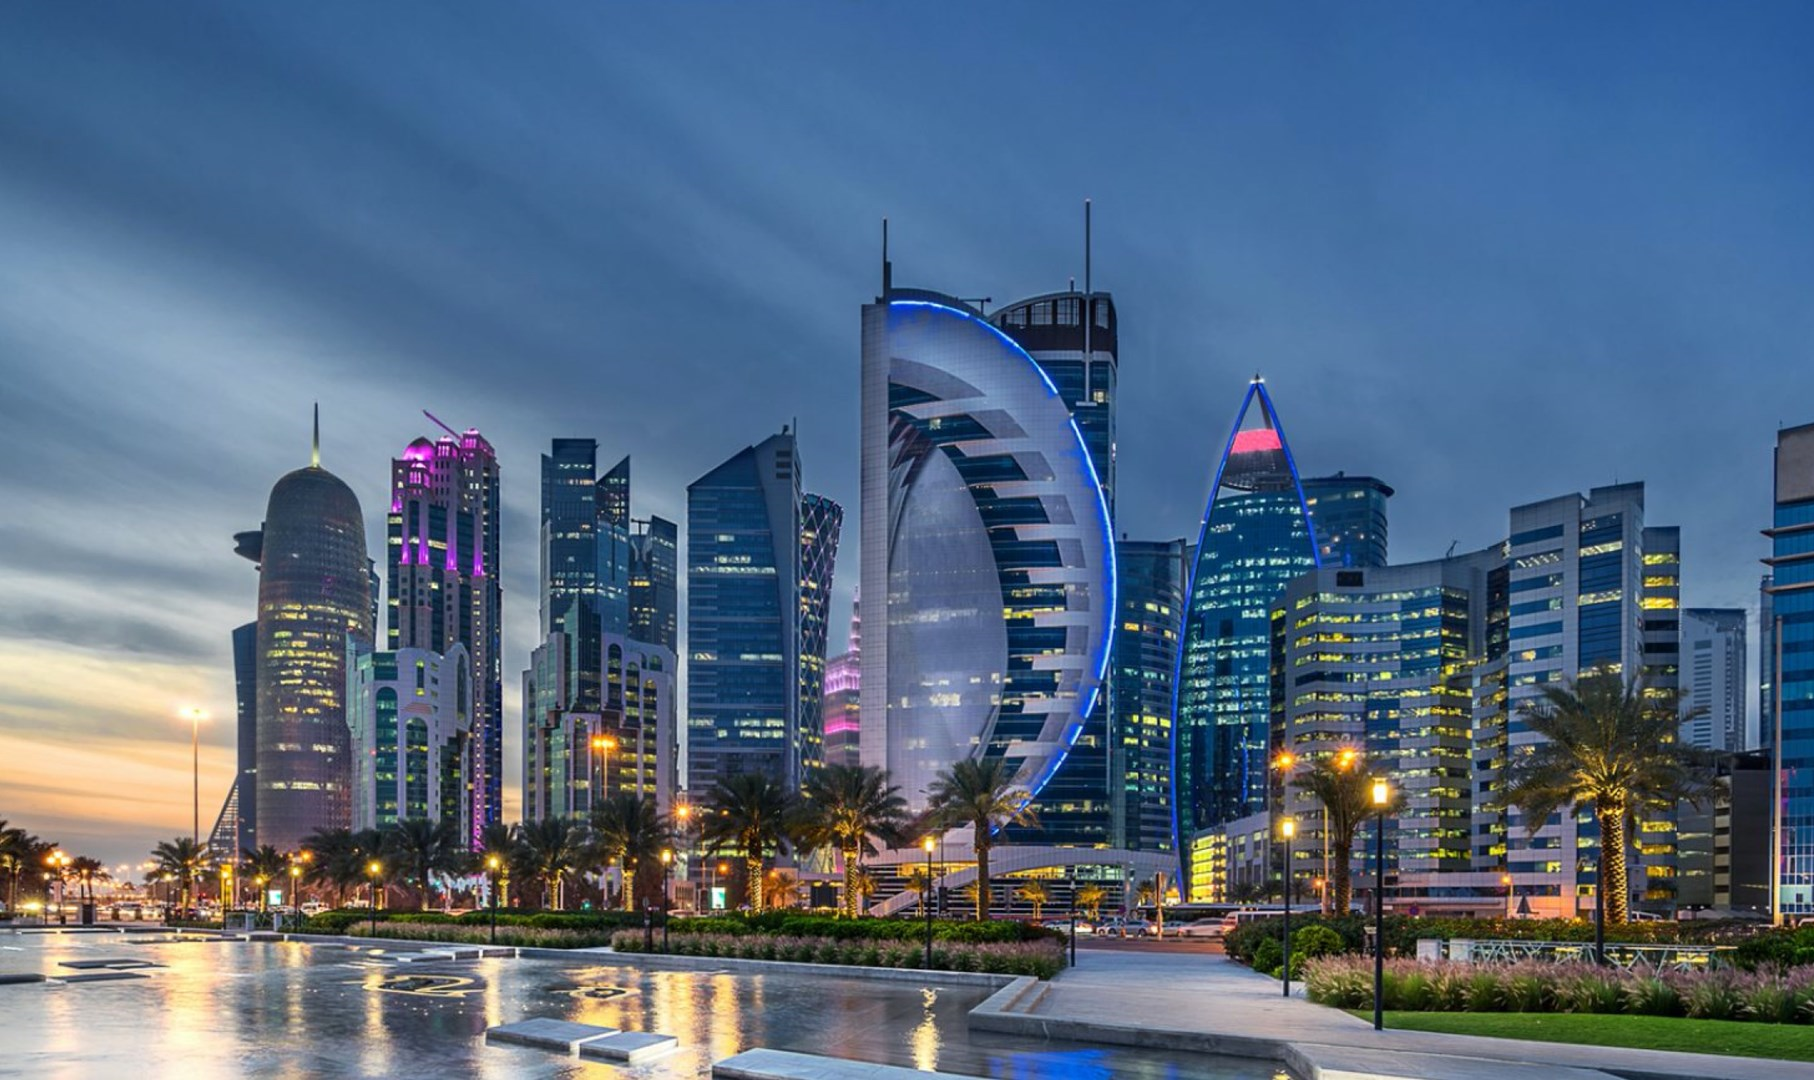 ما الذي يجعل قطر الغنية بالموارد وسيطا قويا؟